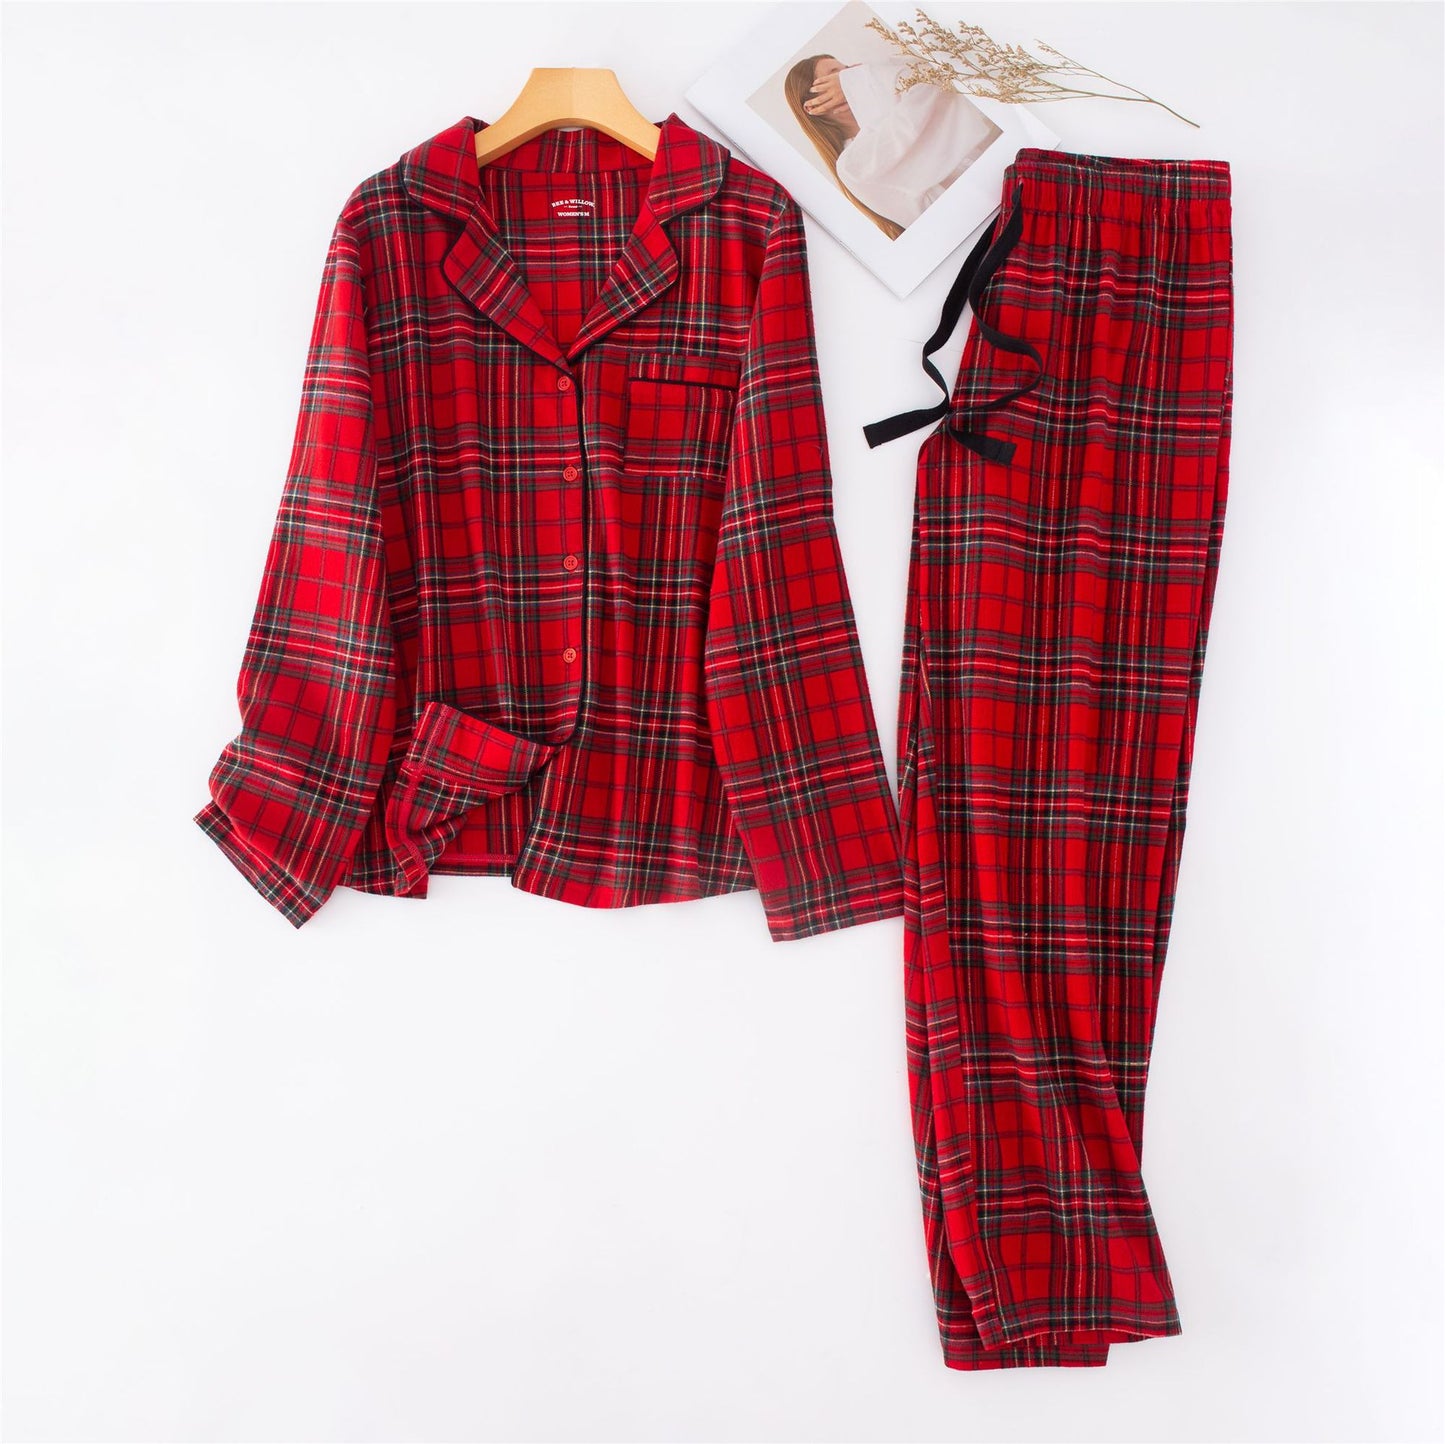 Cotton brushed red plaid pajama set